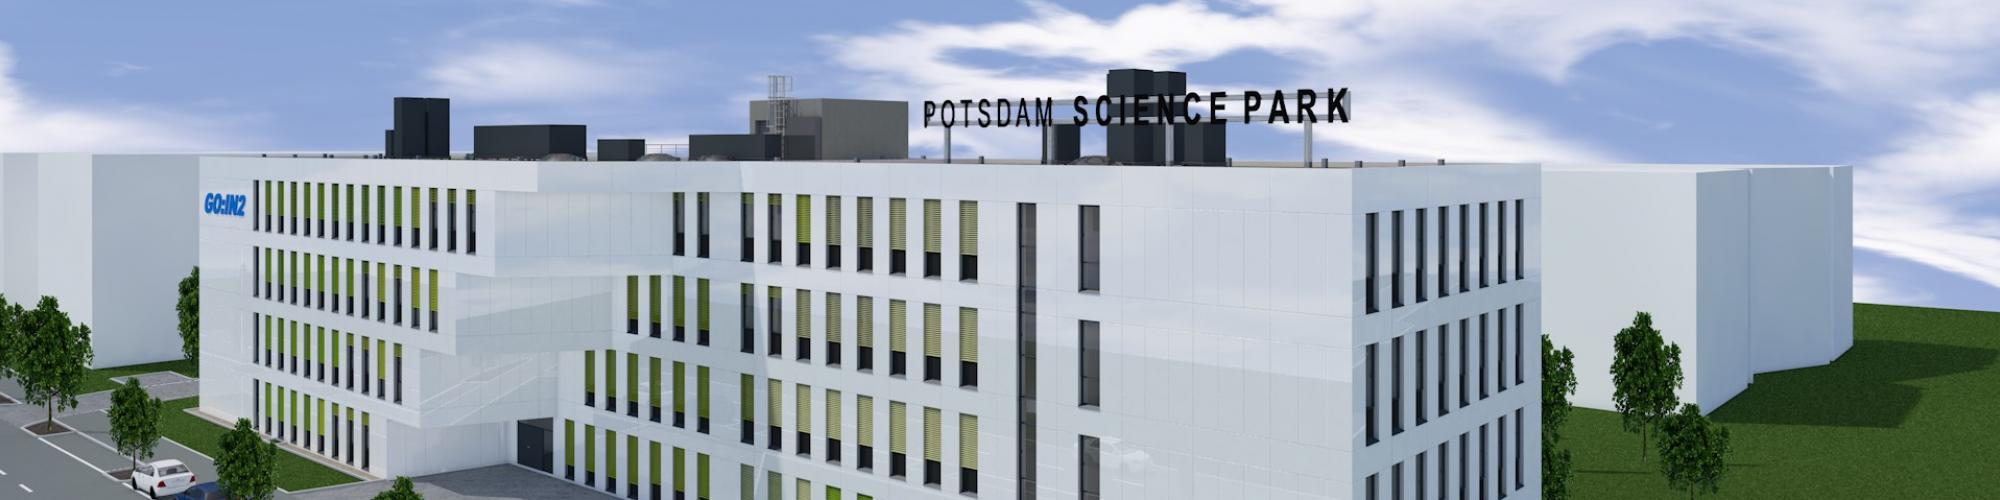 Technologie- und Gewerbezentren Potsdam GmbH